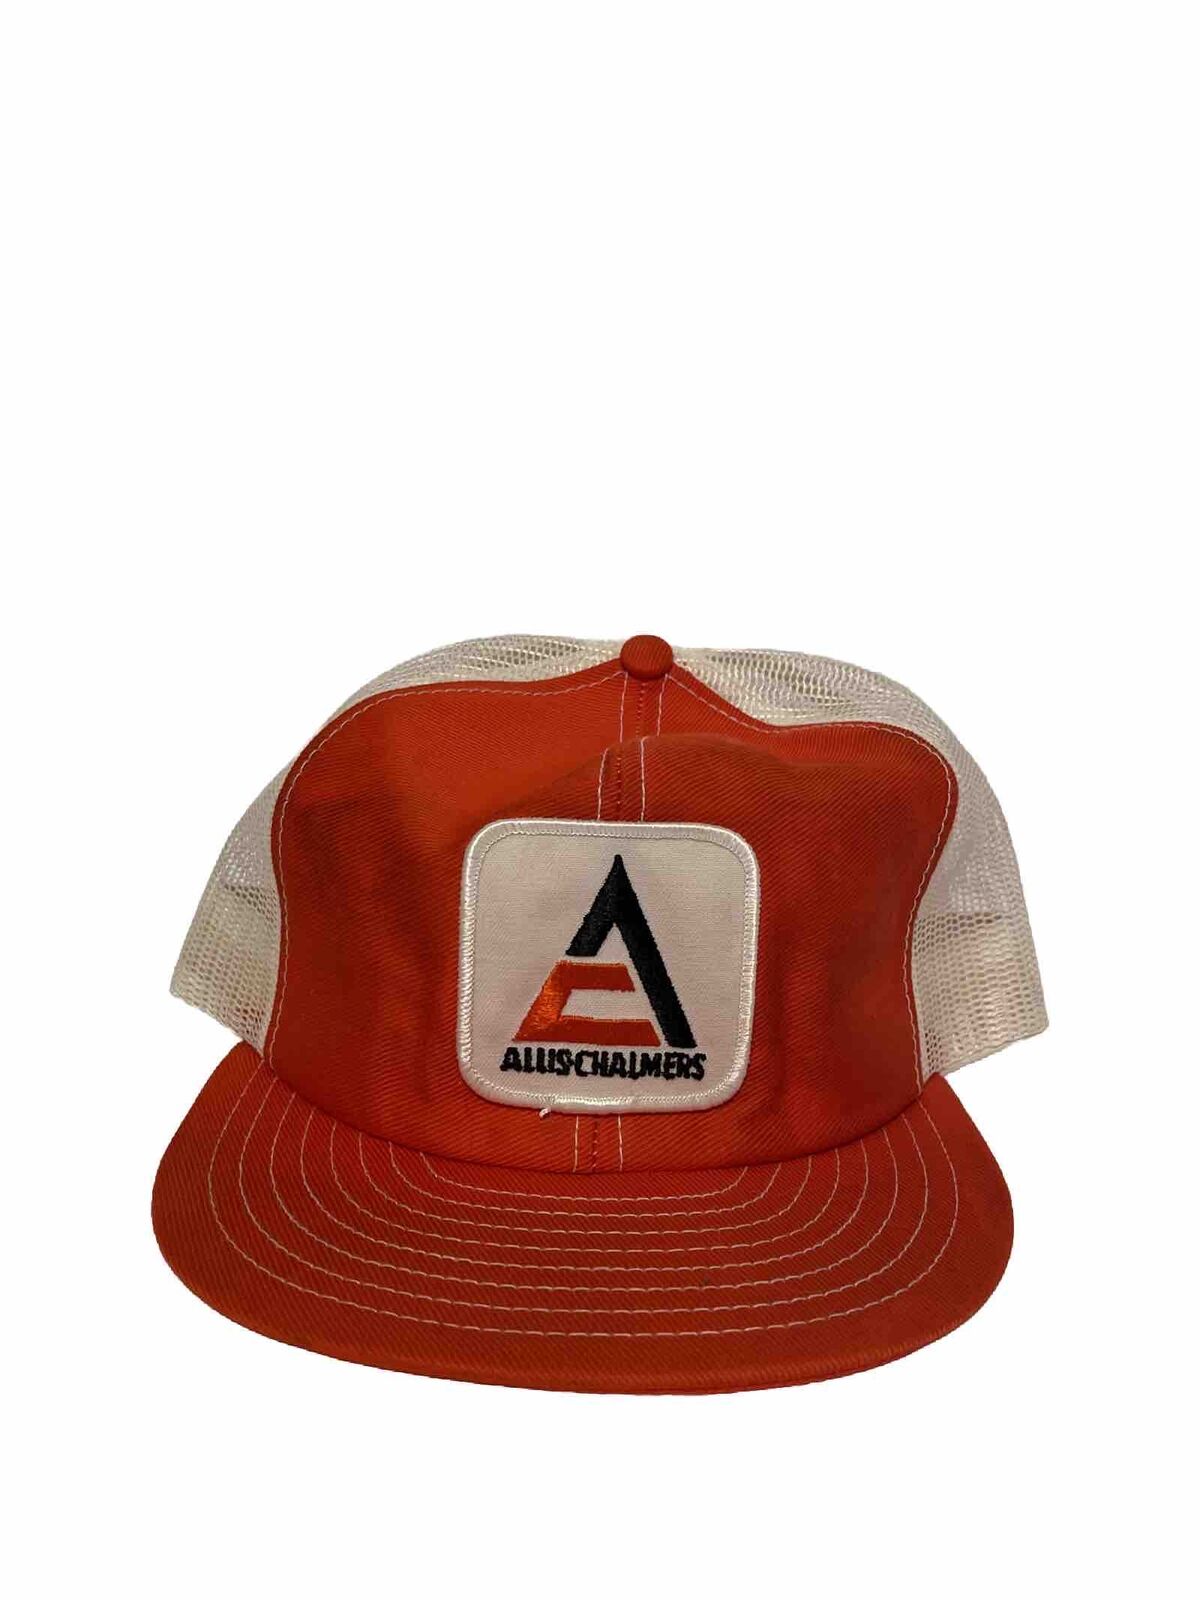 Vintage Allis Chalmers Patch Orange & White SnapBack Trucker Hat LOUSIVILLE Mfg